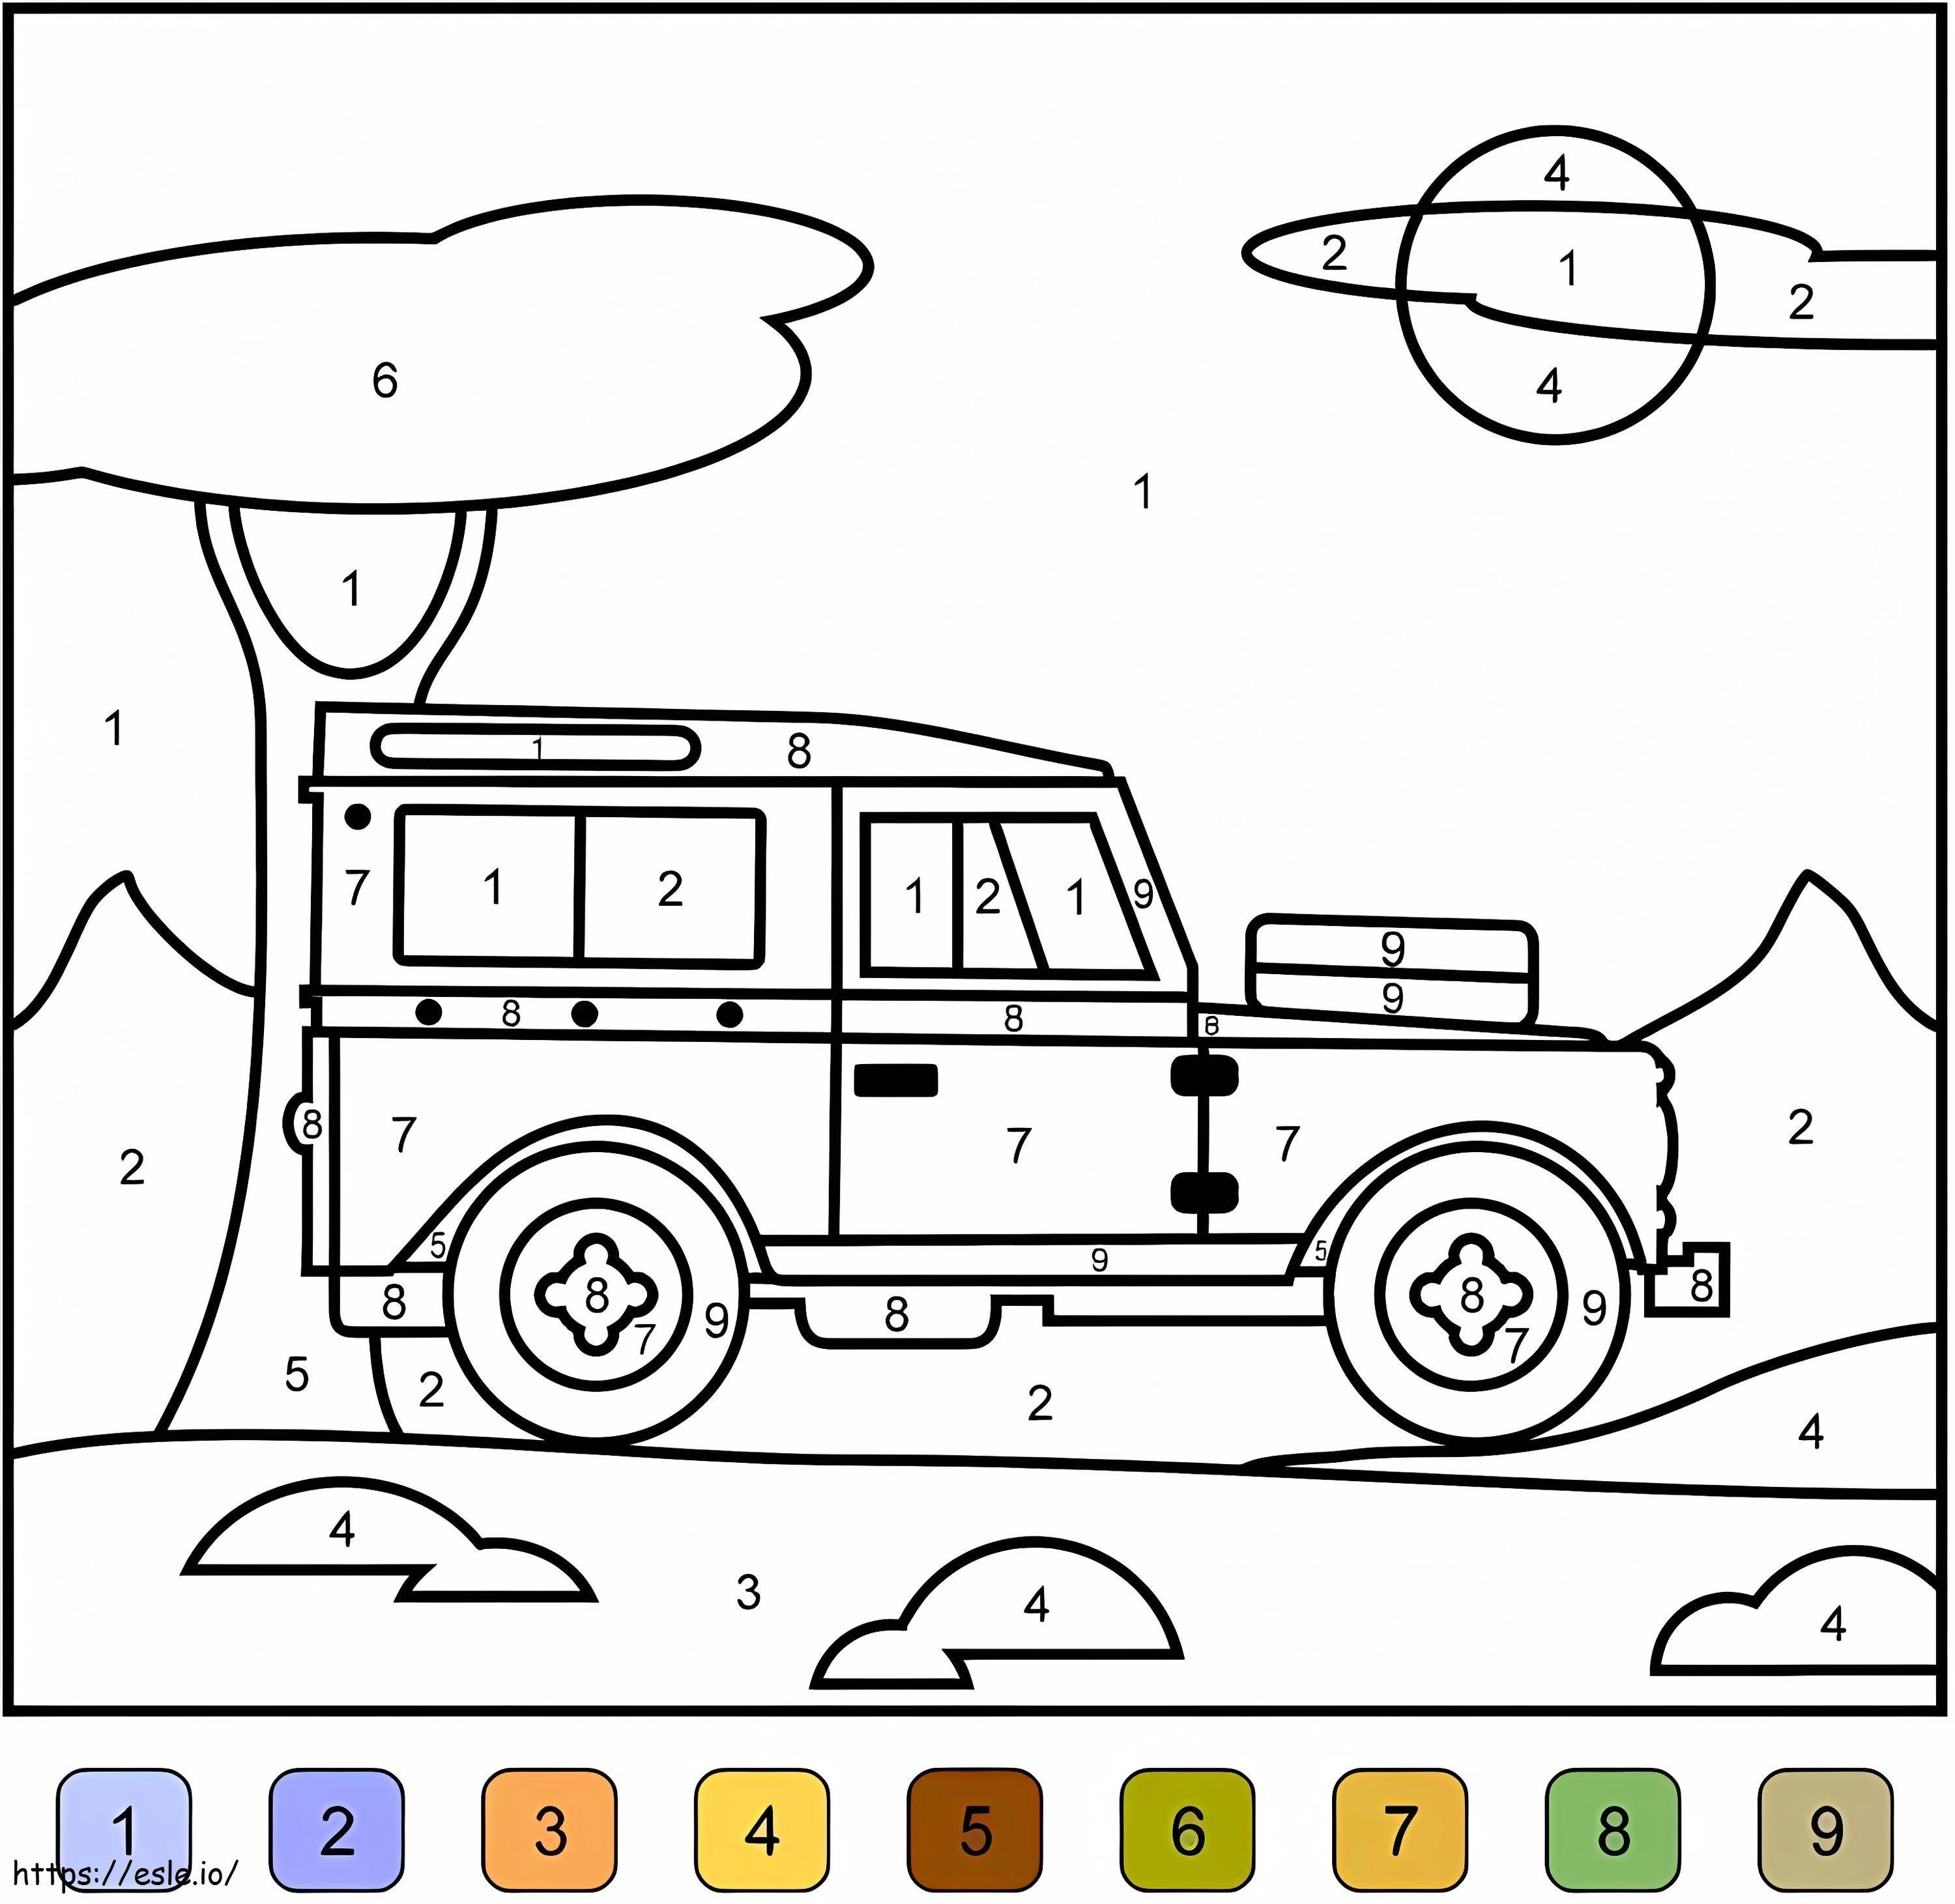 Warna Jeep Berdasarkan Nomor Gambar Mewarnai